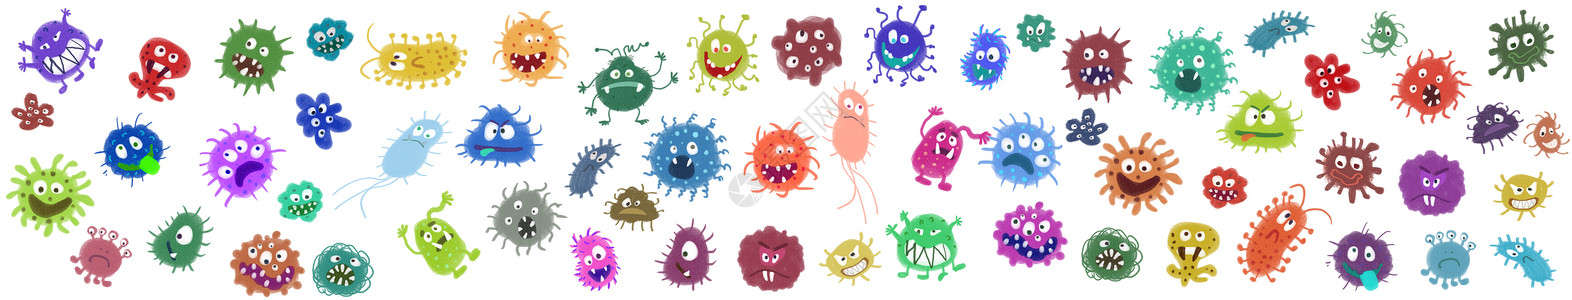 医用射线照片细菌病毒元素插画